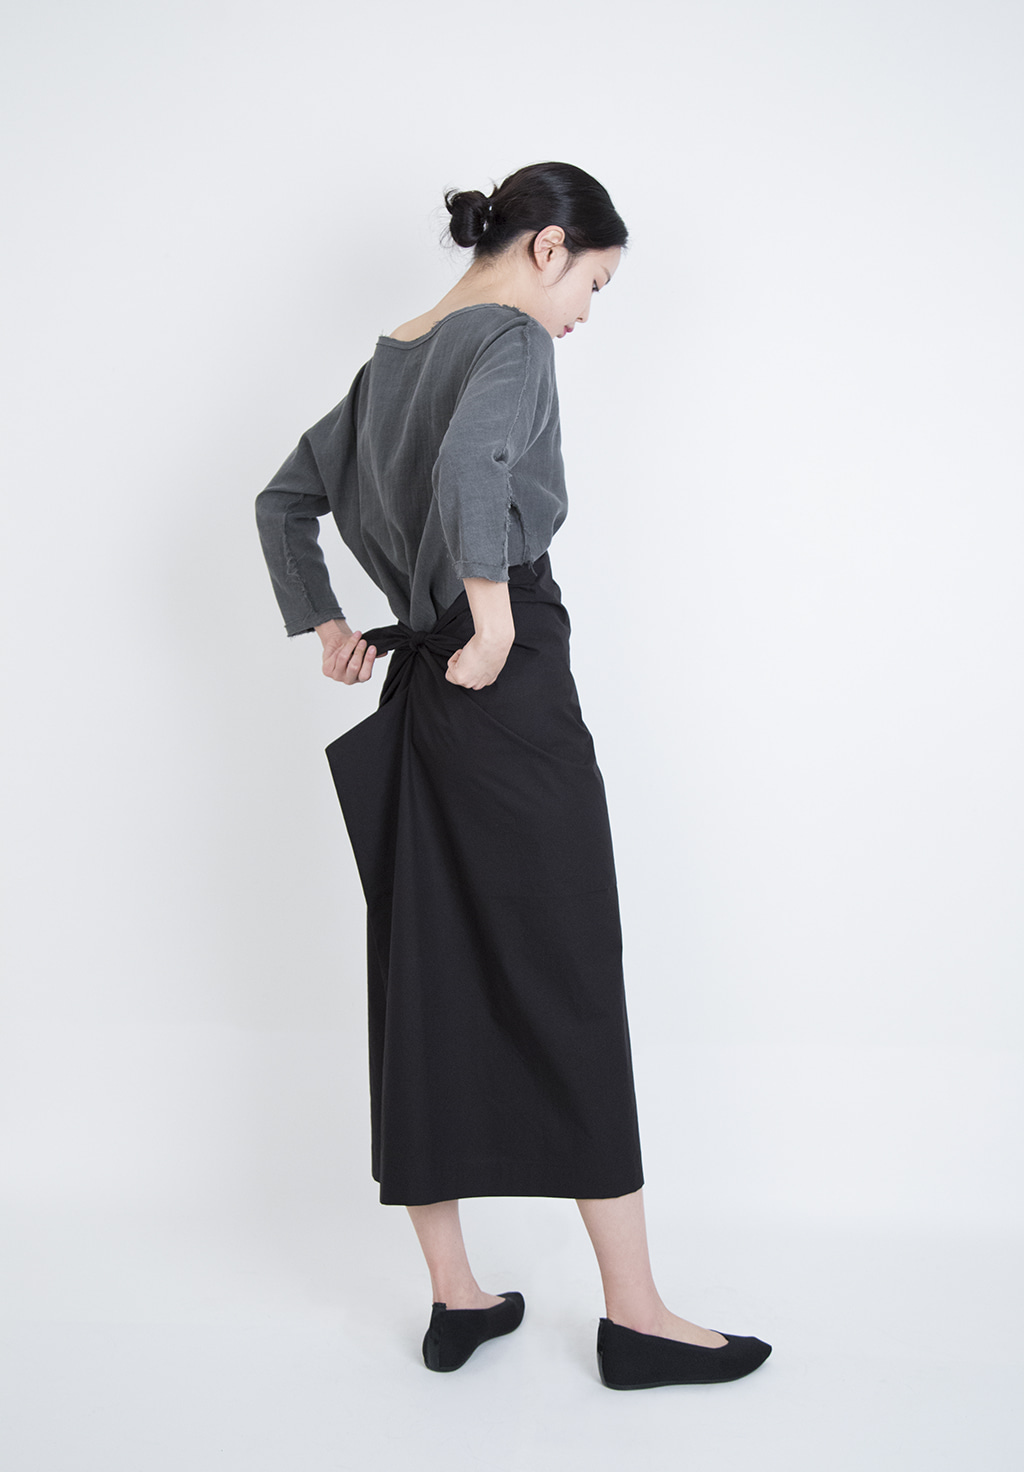 Ribbon apron skirt - black